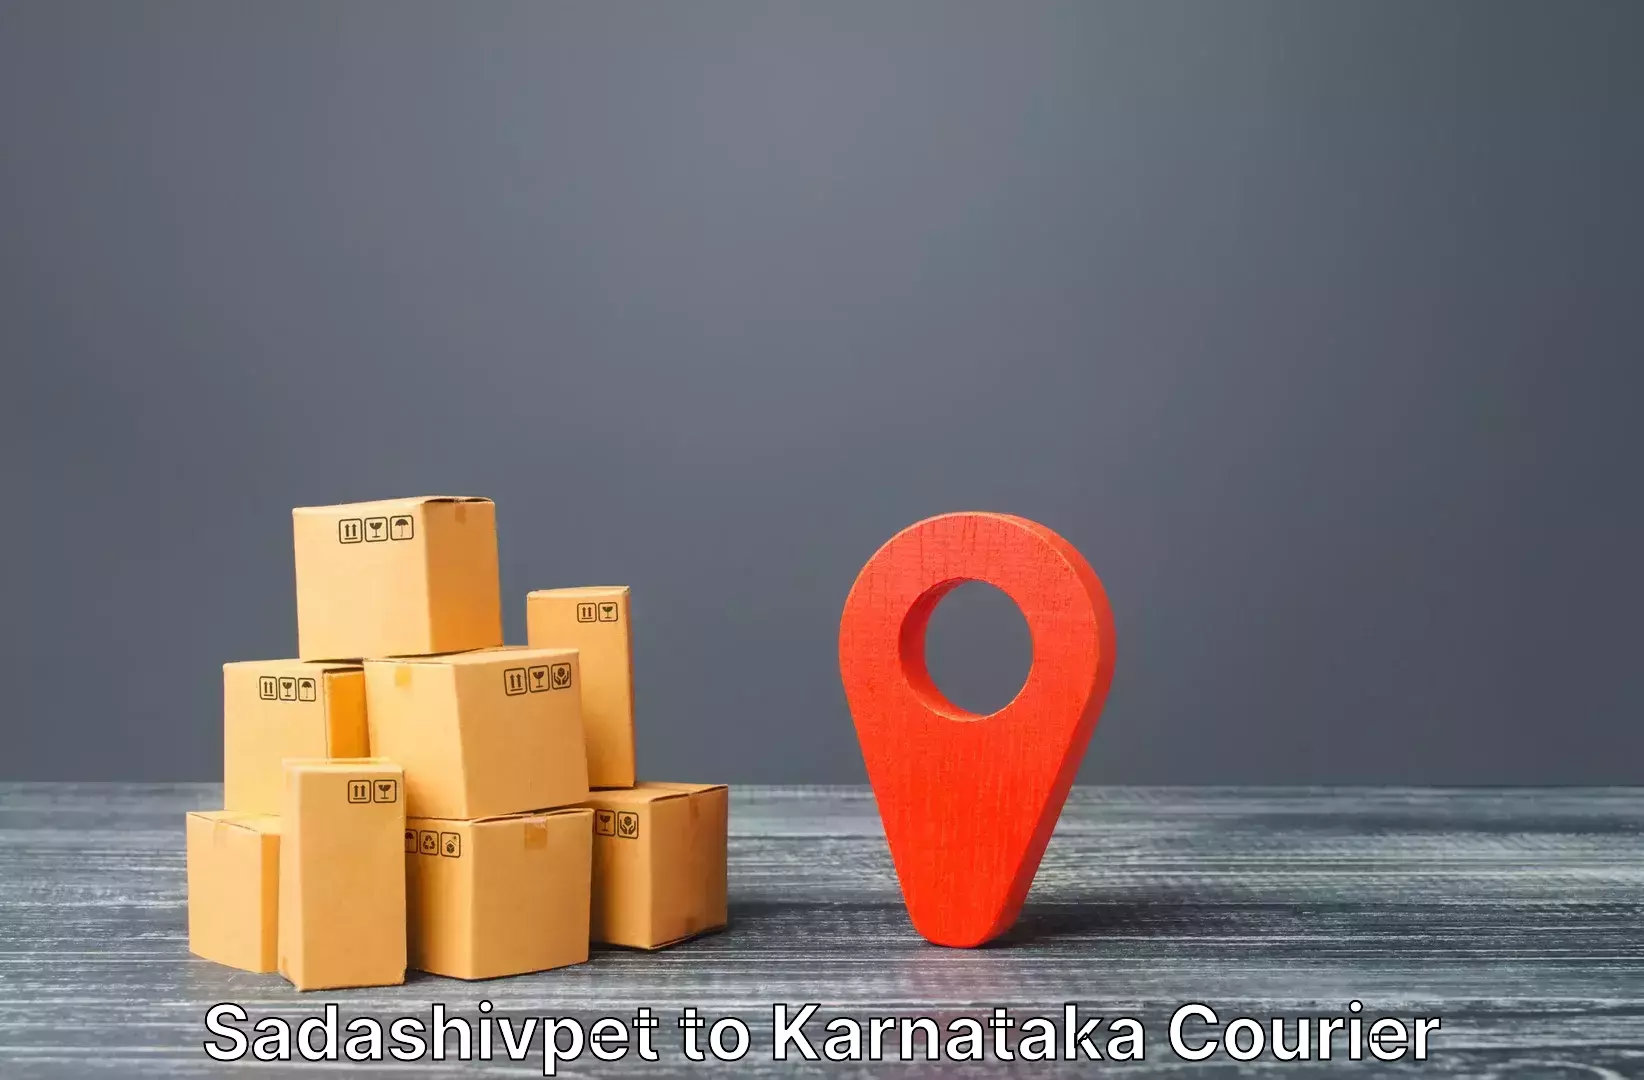 Efficient baggage courier system in Sadashivpet to Kanjarakatte